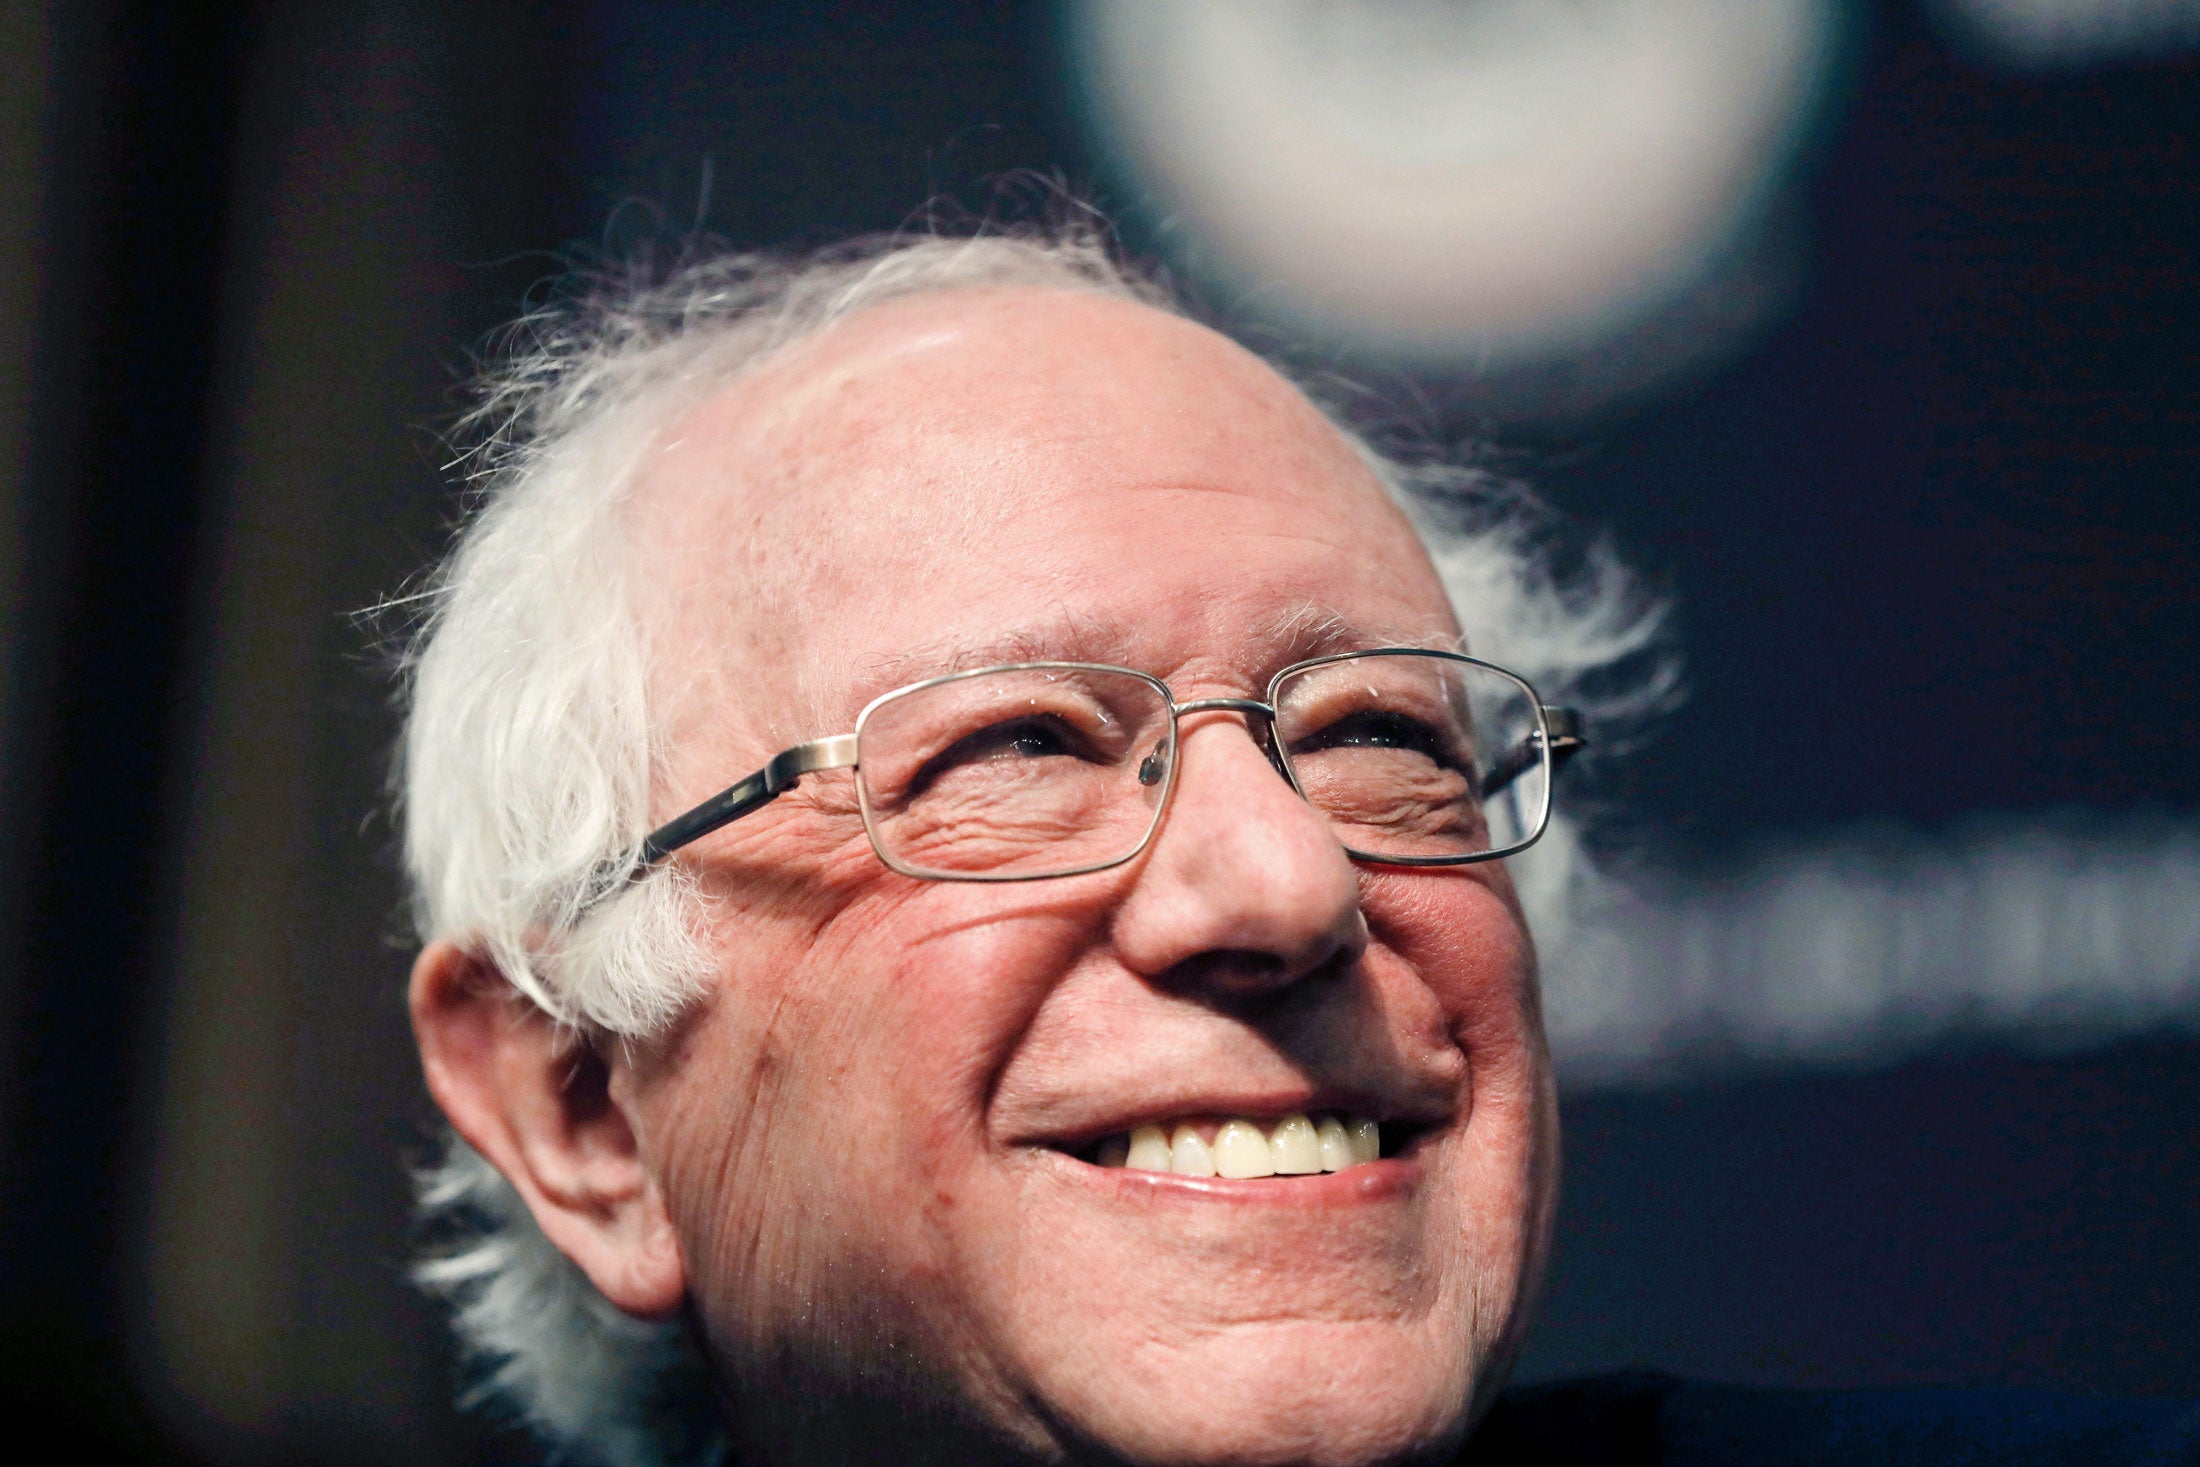 Bernie Sanders smiling.